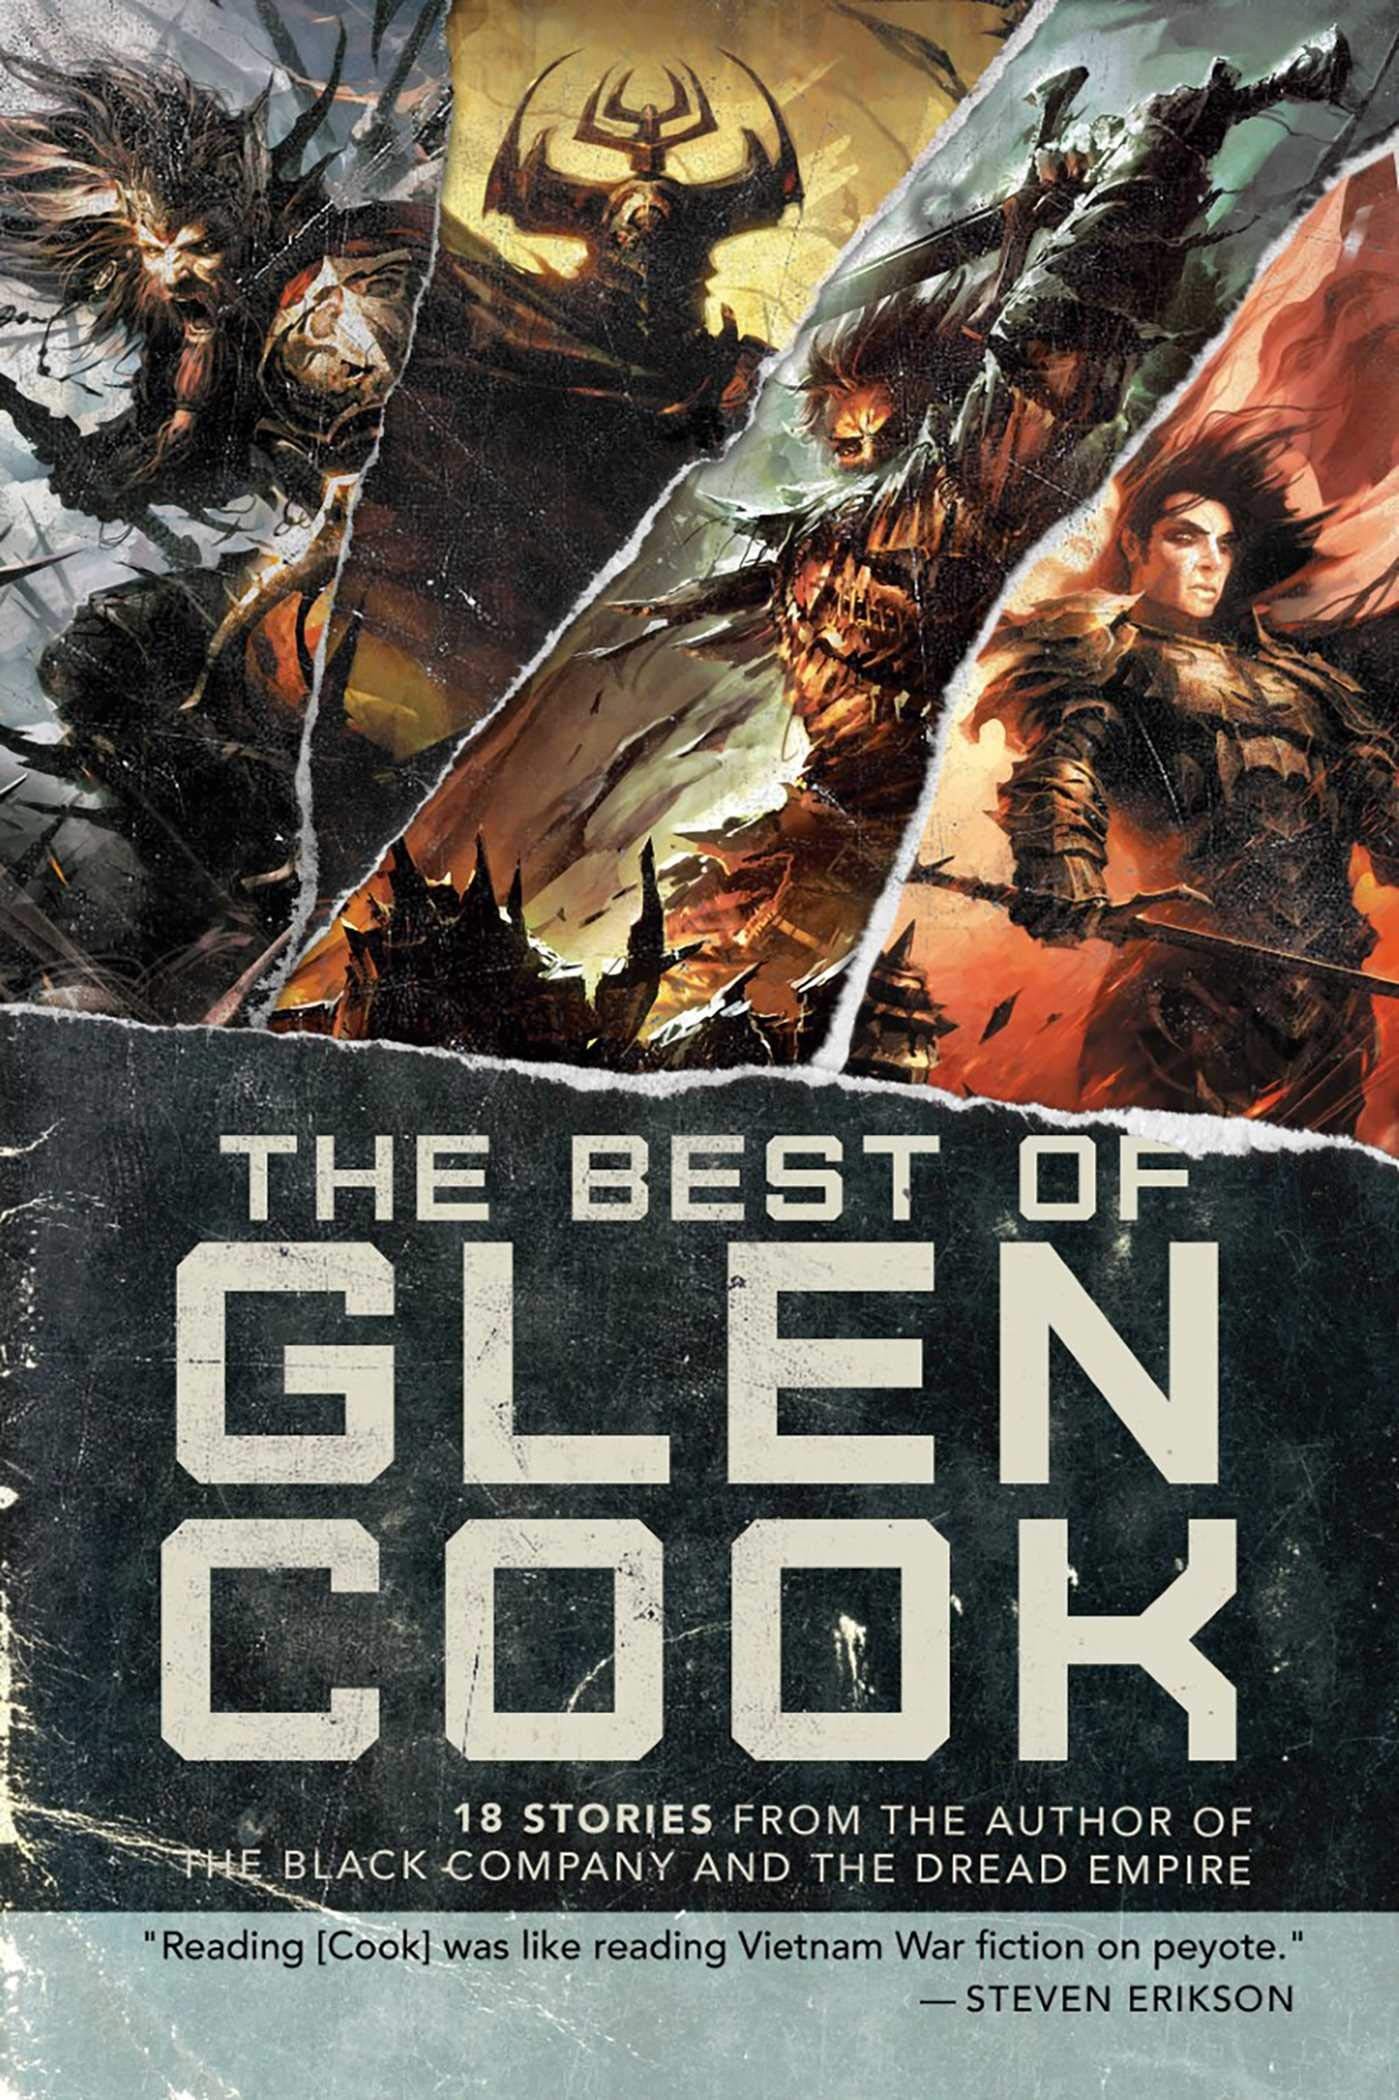 The Best of Glen Cook: 18 Stories